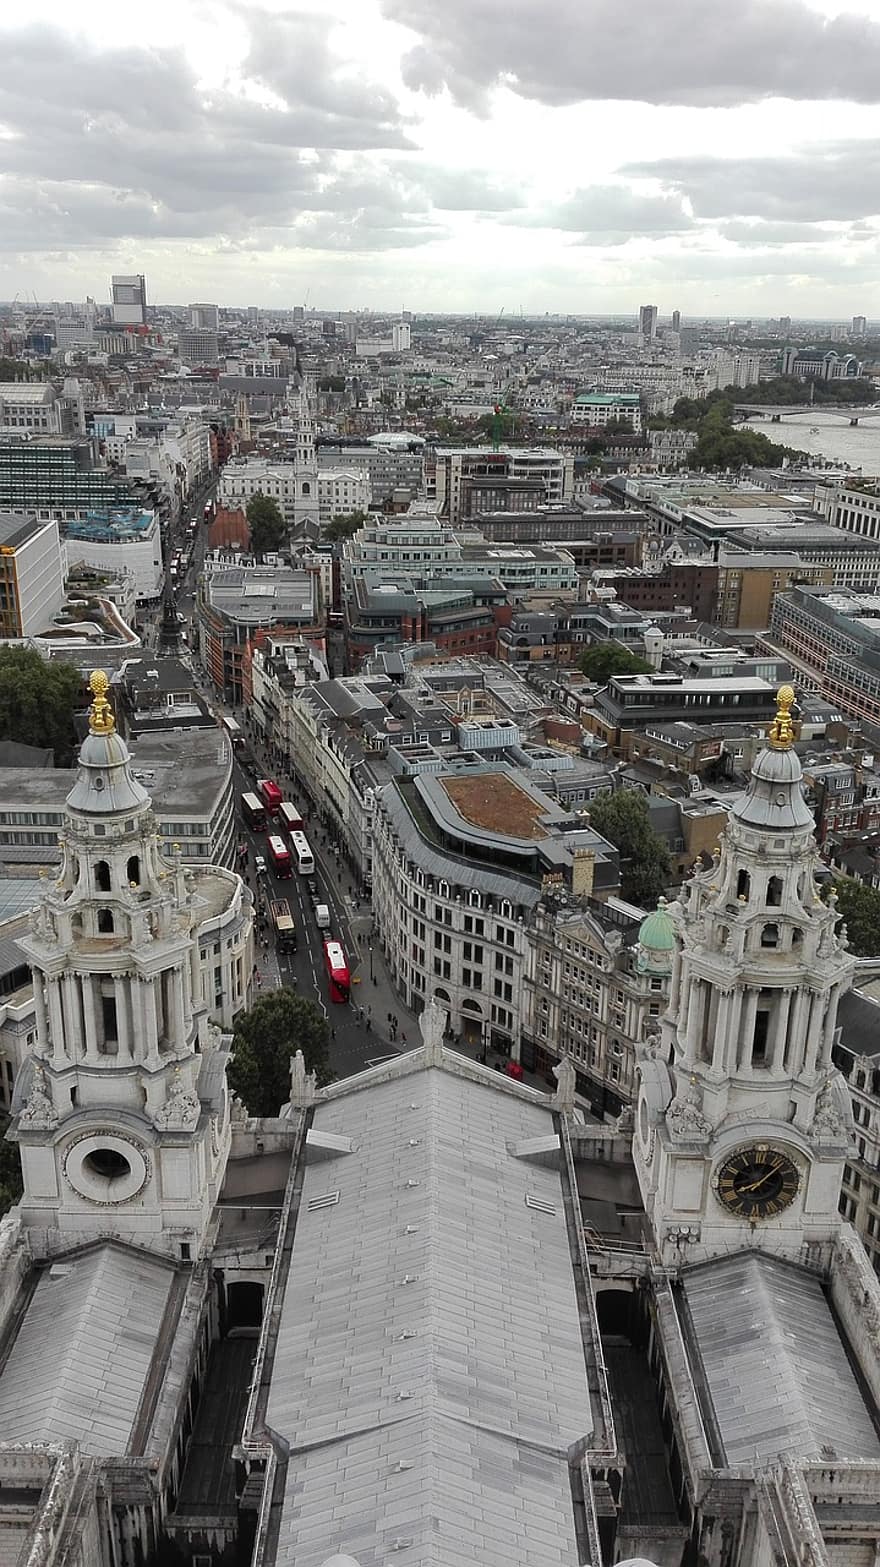 budov, silnice, provoz, architektura, panoráma města, Street View, městský, město, svatý pauls, Londýn